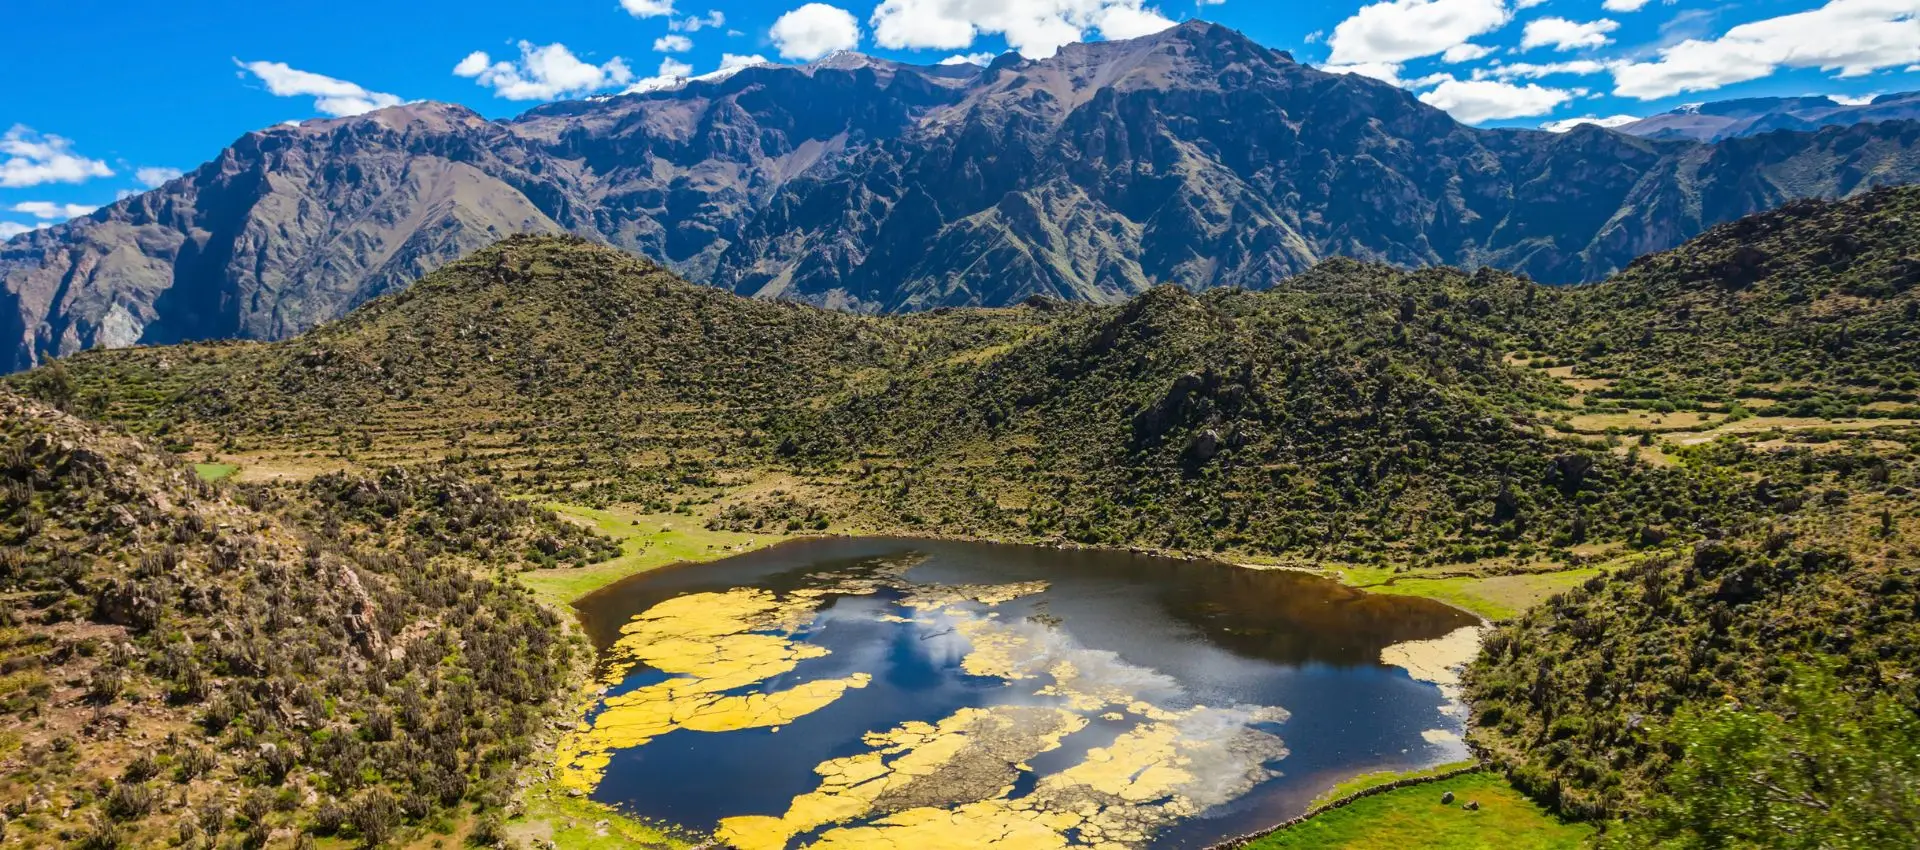 Peru de la Pacific la Anzi - Festivalul Inti Raymi și Muntele Curcubeu